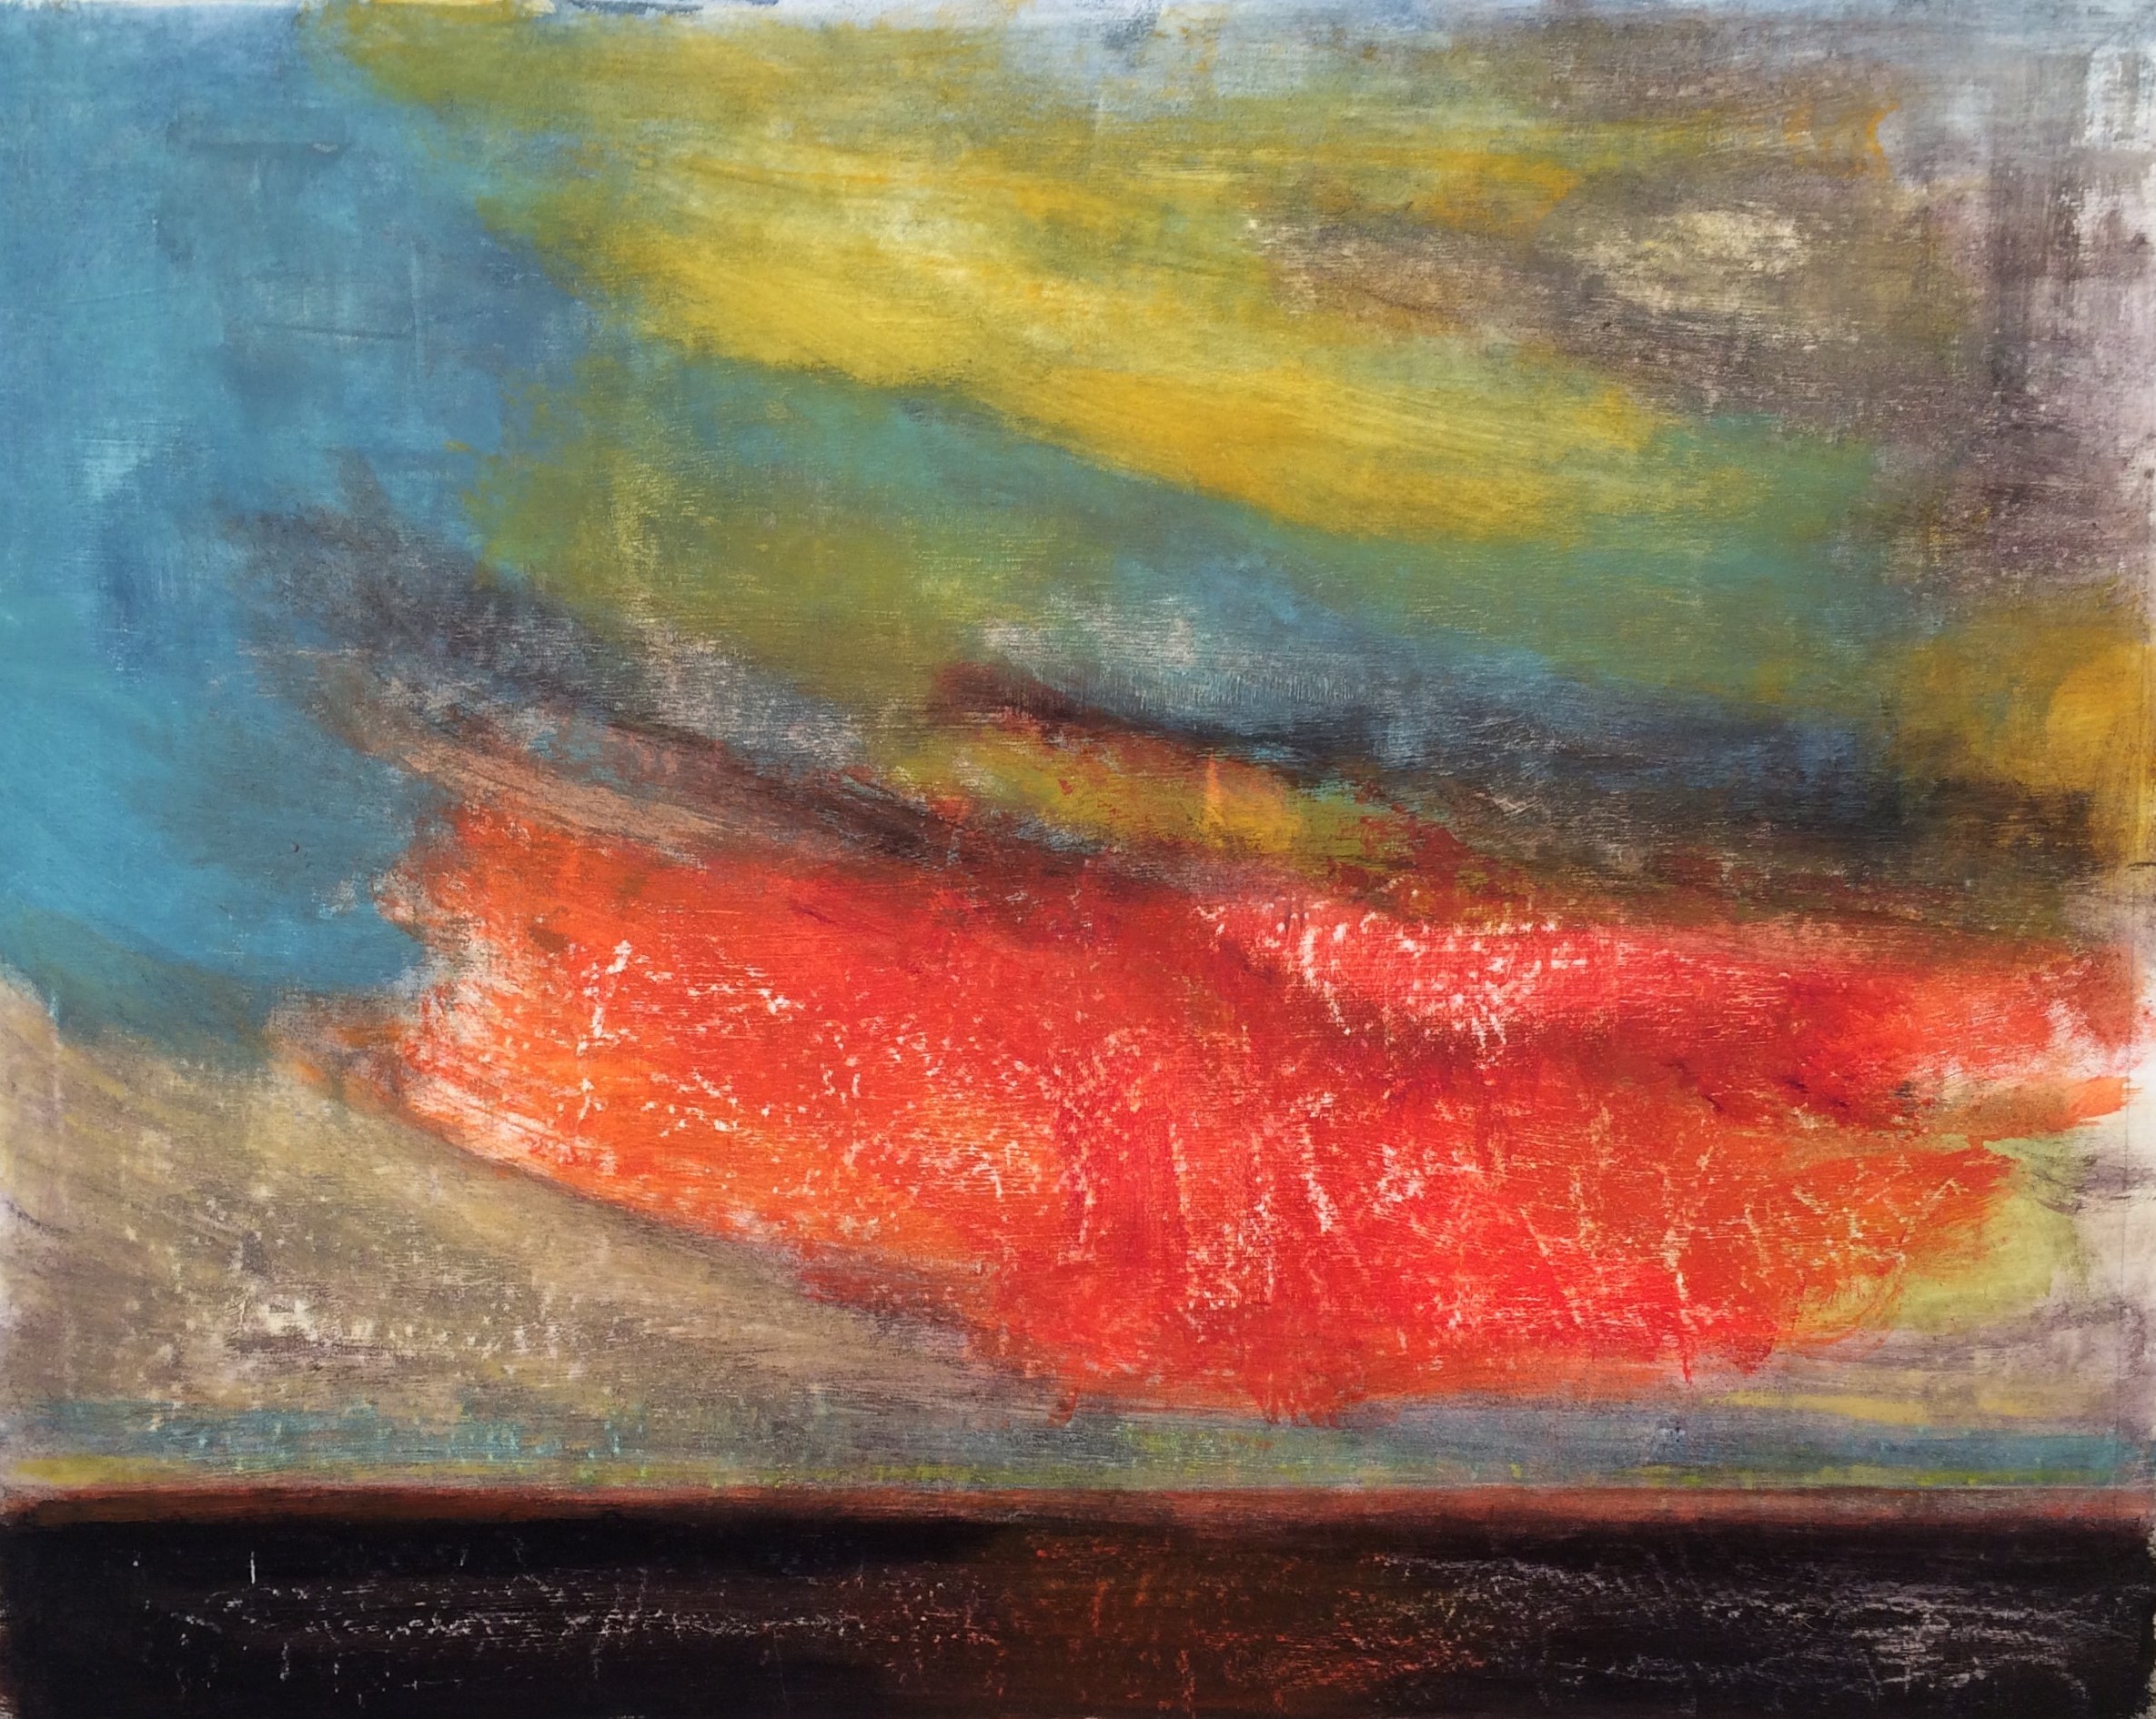 N° 2293 - Frottements de nuages - Acrylique sur toile - 81 x 100 cm - 6 avril 2016